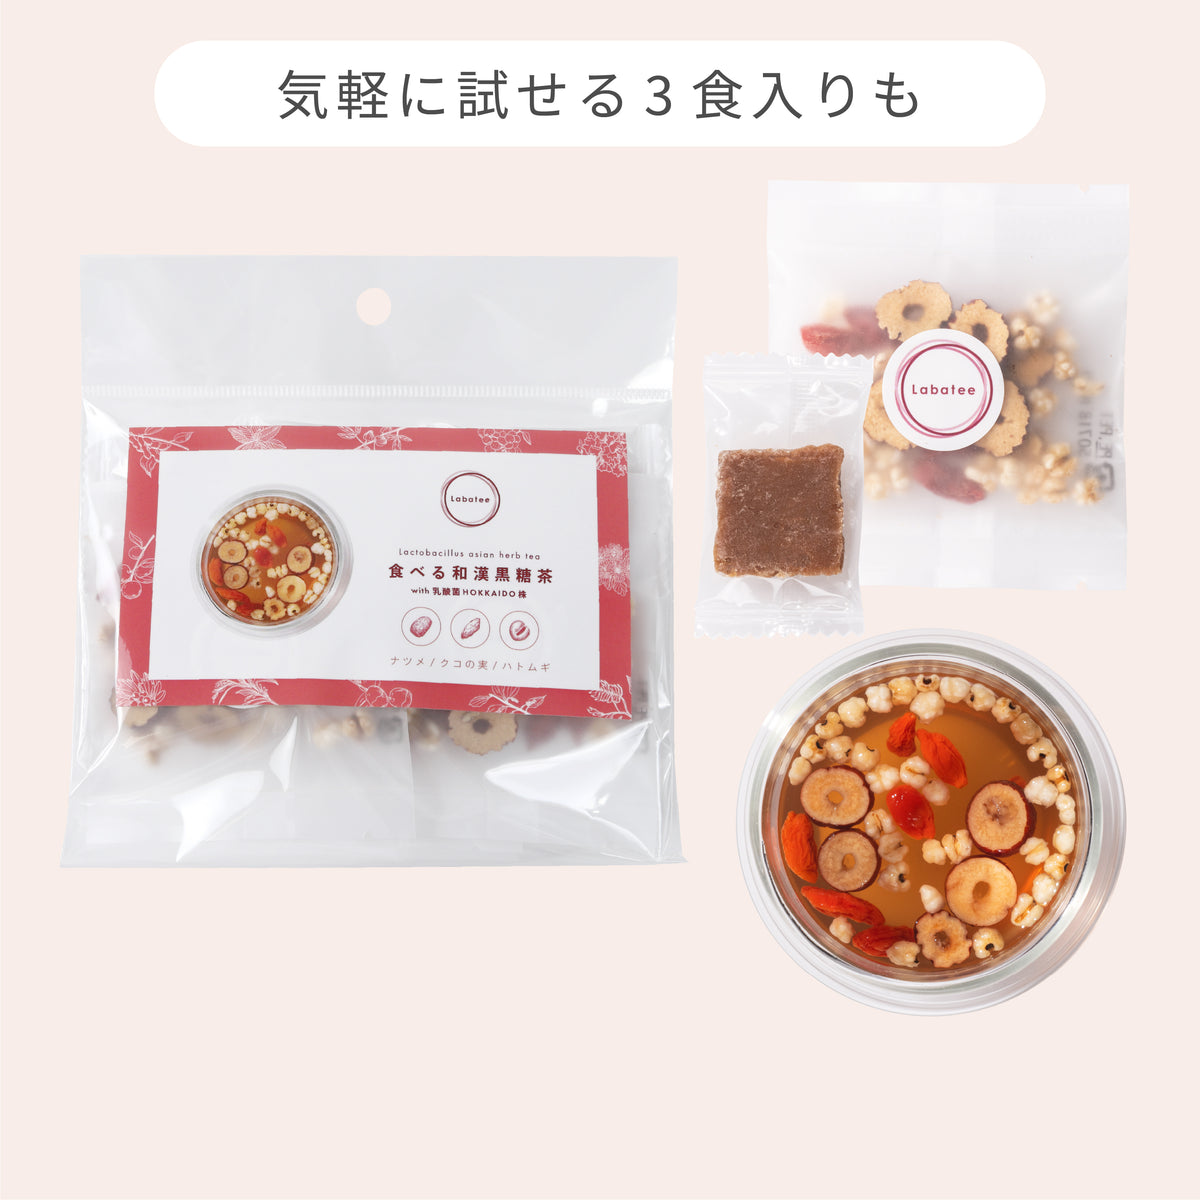 食べる和漢黒糖茶 with 乳酸菌HOKKAIDO株 ナツメ・クコの実・ハトムギ